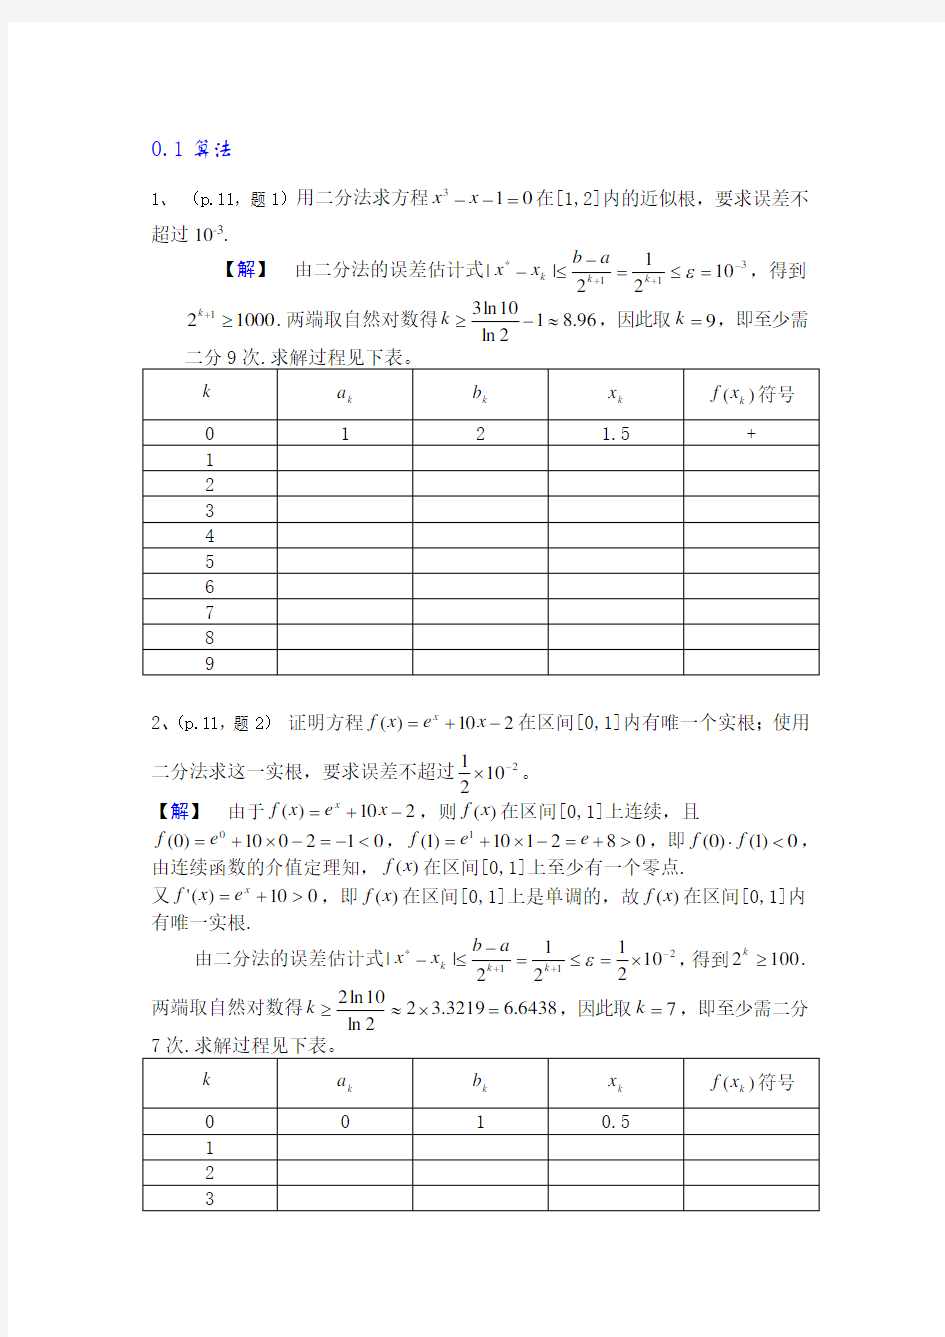 数值分析简明教程(第二版)课后习题答案